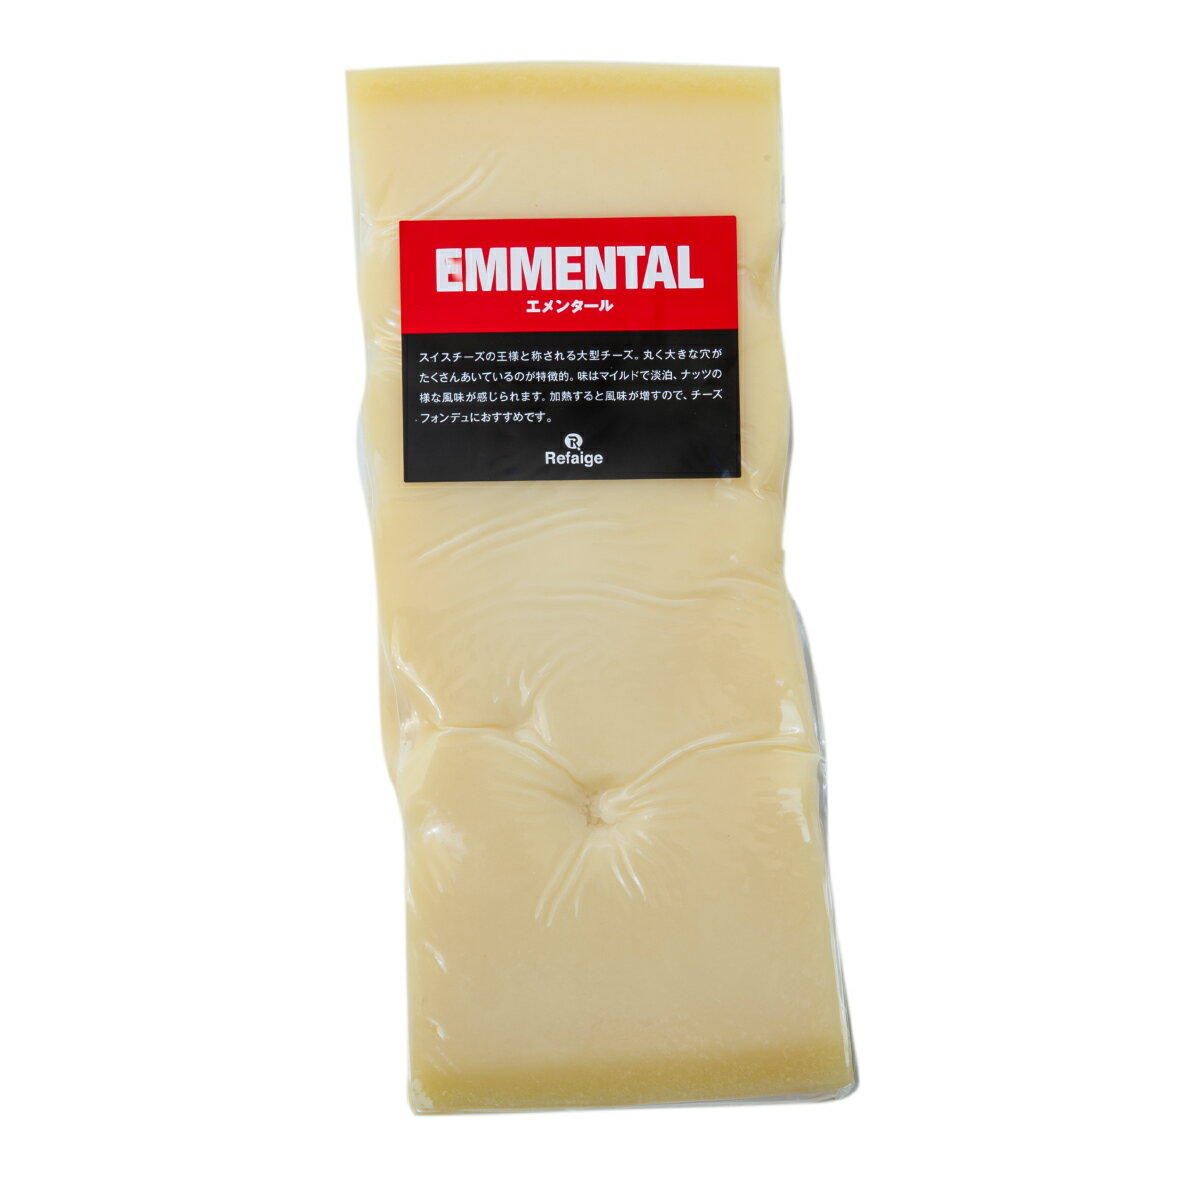 エメンタール エメンタールはグリュイエールと並んでスイスを代表する大型チーズです。 大量の牛乳を使って作る巨大なチーズで、味はマイルドで淡泊、ほんのり香るナッツのような味わいが特徴です。EUのAOPに登録されているので、スイス以外では産地を書くものと定められています。見た目は発行の段階で発生する穴（チーズアイ）が特徴で、アニメなどでは穴あきチーズとしても有名です。そのまま食べられますが、火を通すとさらに風味が増し、よりコクが出てきます。おすすめはなんといってもグリュイエールと共に溶かしてチーズフォンデュです！ 種類別 ナチュラルチーズ 原材料名 生乳、食塩 原産国 スイス 内容量 約500g タイプ ハード 加工 カット 料理 チーズフォンデュやキッシュなど 合うお酒 フルーティーな白ワインや紅茶等にも 個性 ★★☆ 塩味 ★☆☆ 配送 クール便（商品は真空パック） 賞味期限 お届け後40日以上（未開封時） 保存方法 要冷蔵(10℃以下)乾燥が大敵。 密閉容器にいれて冷蔵庫の野菜室で保存がおすすめです。 開封後は賞味期限に関わらずお早めにお召し上がりください。 栄養成分表示 熱量401kcal、たんぱく質29.0g、脂質31.0g、炭水化物1.0g、食塩相当量0.5g＊100gあたり／推定値 製造・販売者 株式会社リフェージュ　／　埼玉県戸田市美女木5-21-7 ＜仕入・製造・検査・出荷まで自社工場一貫体制にて行っております。＞ 不定貫について 1kgあたり税込5,054円にて再計算させていただきます。